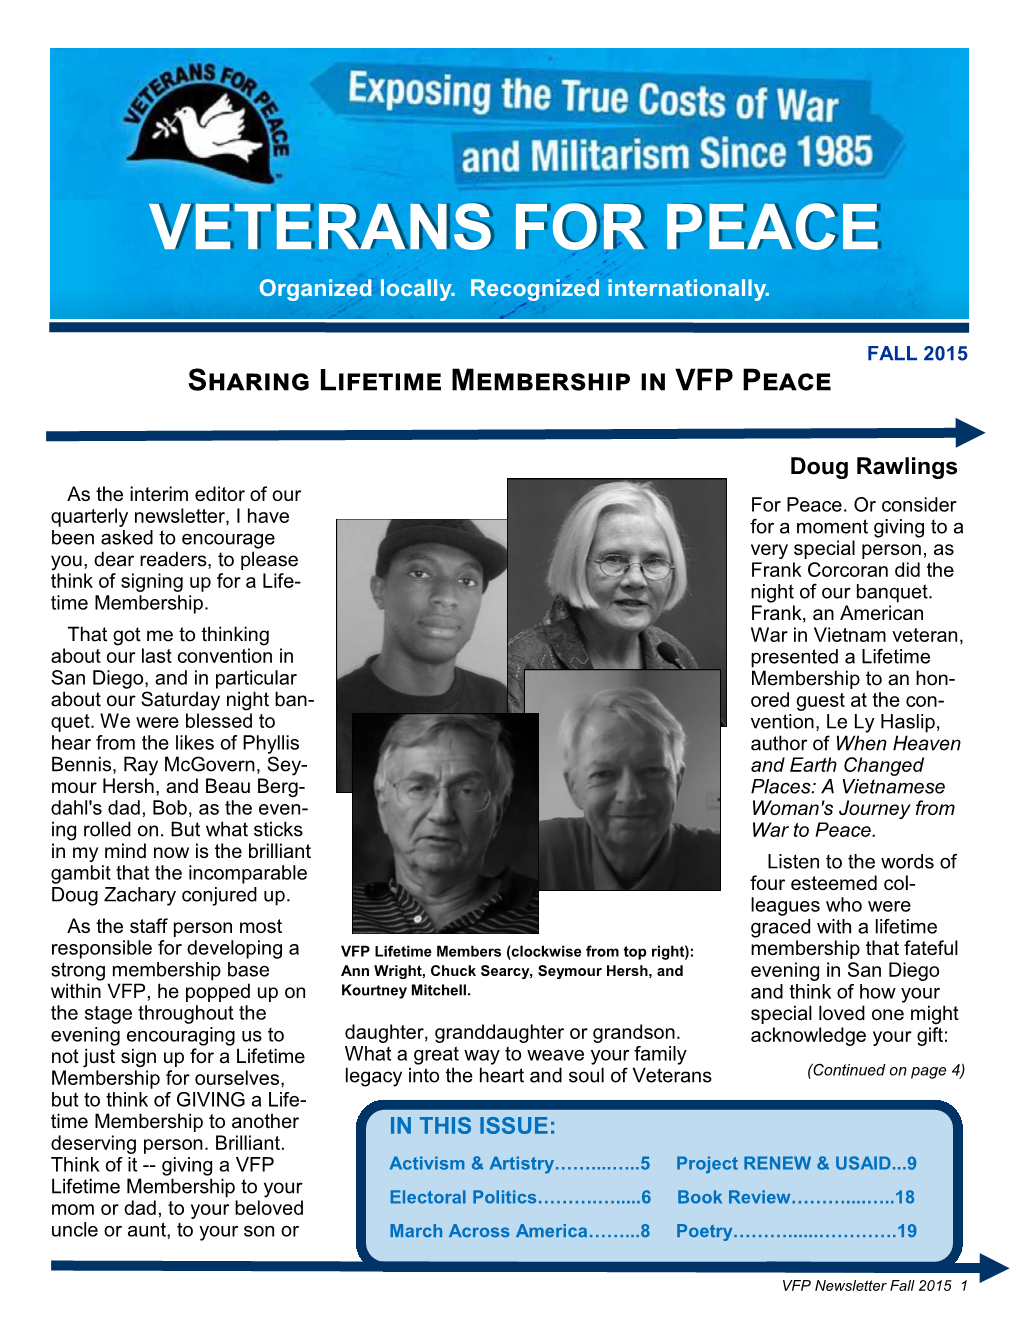 FALL 2015 Sharing Lifetime Membership in VFP Peace